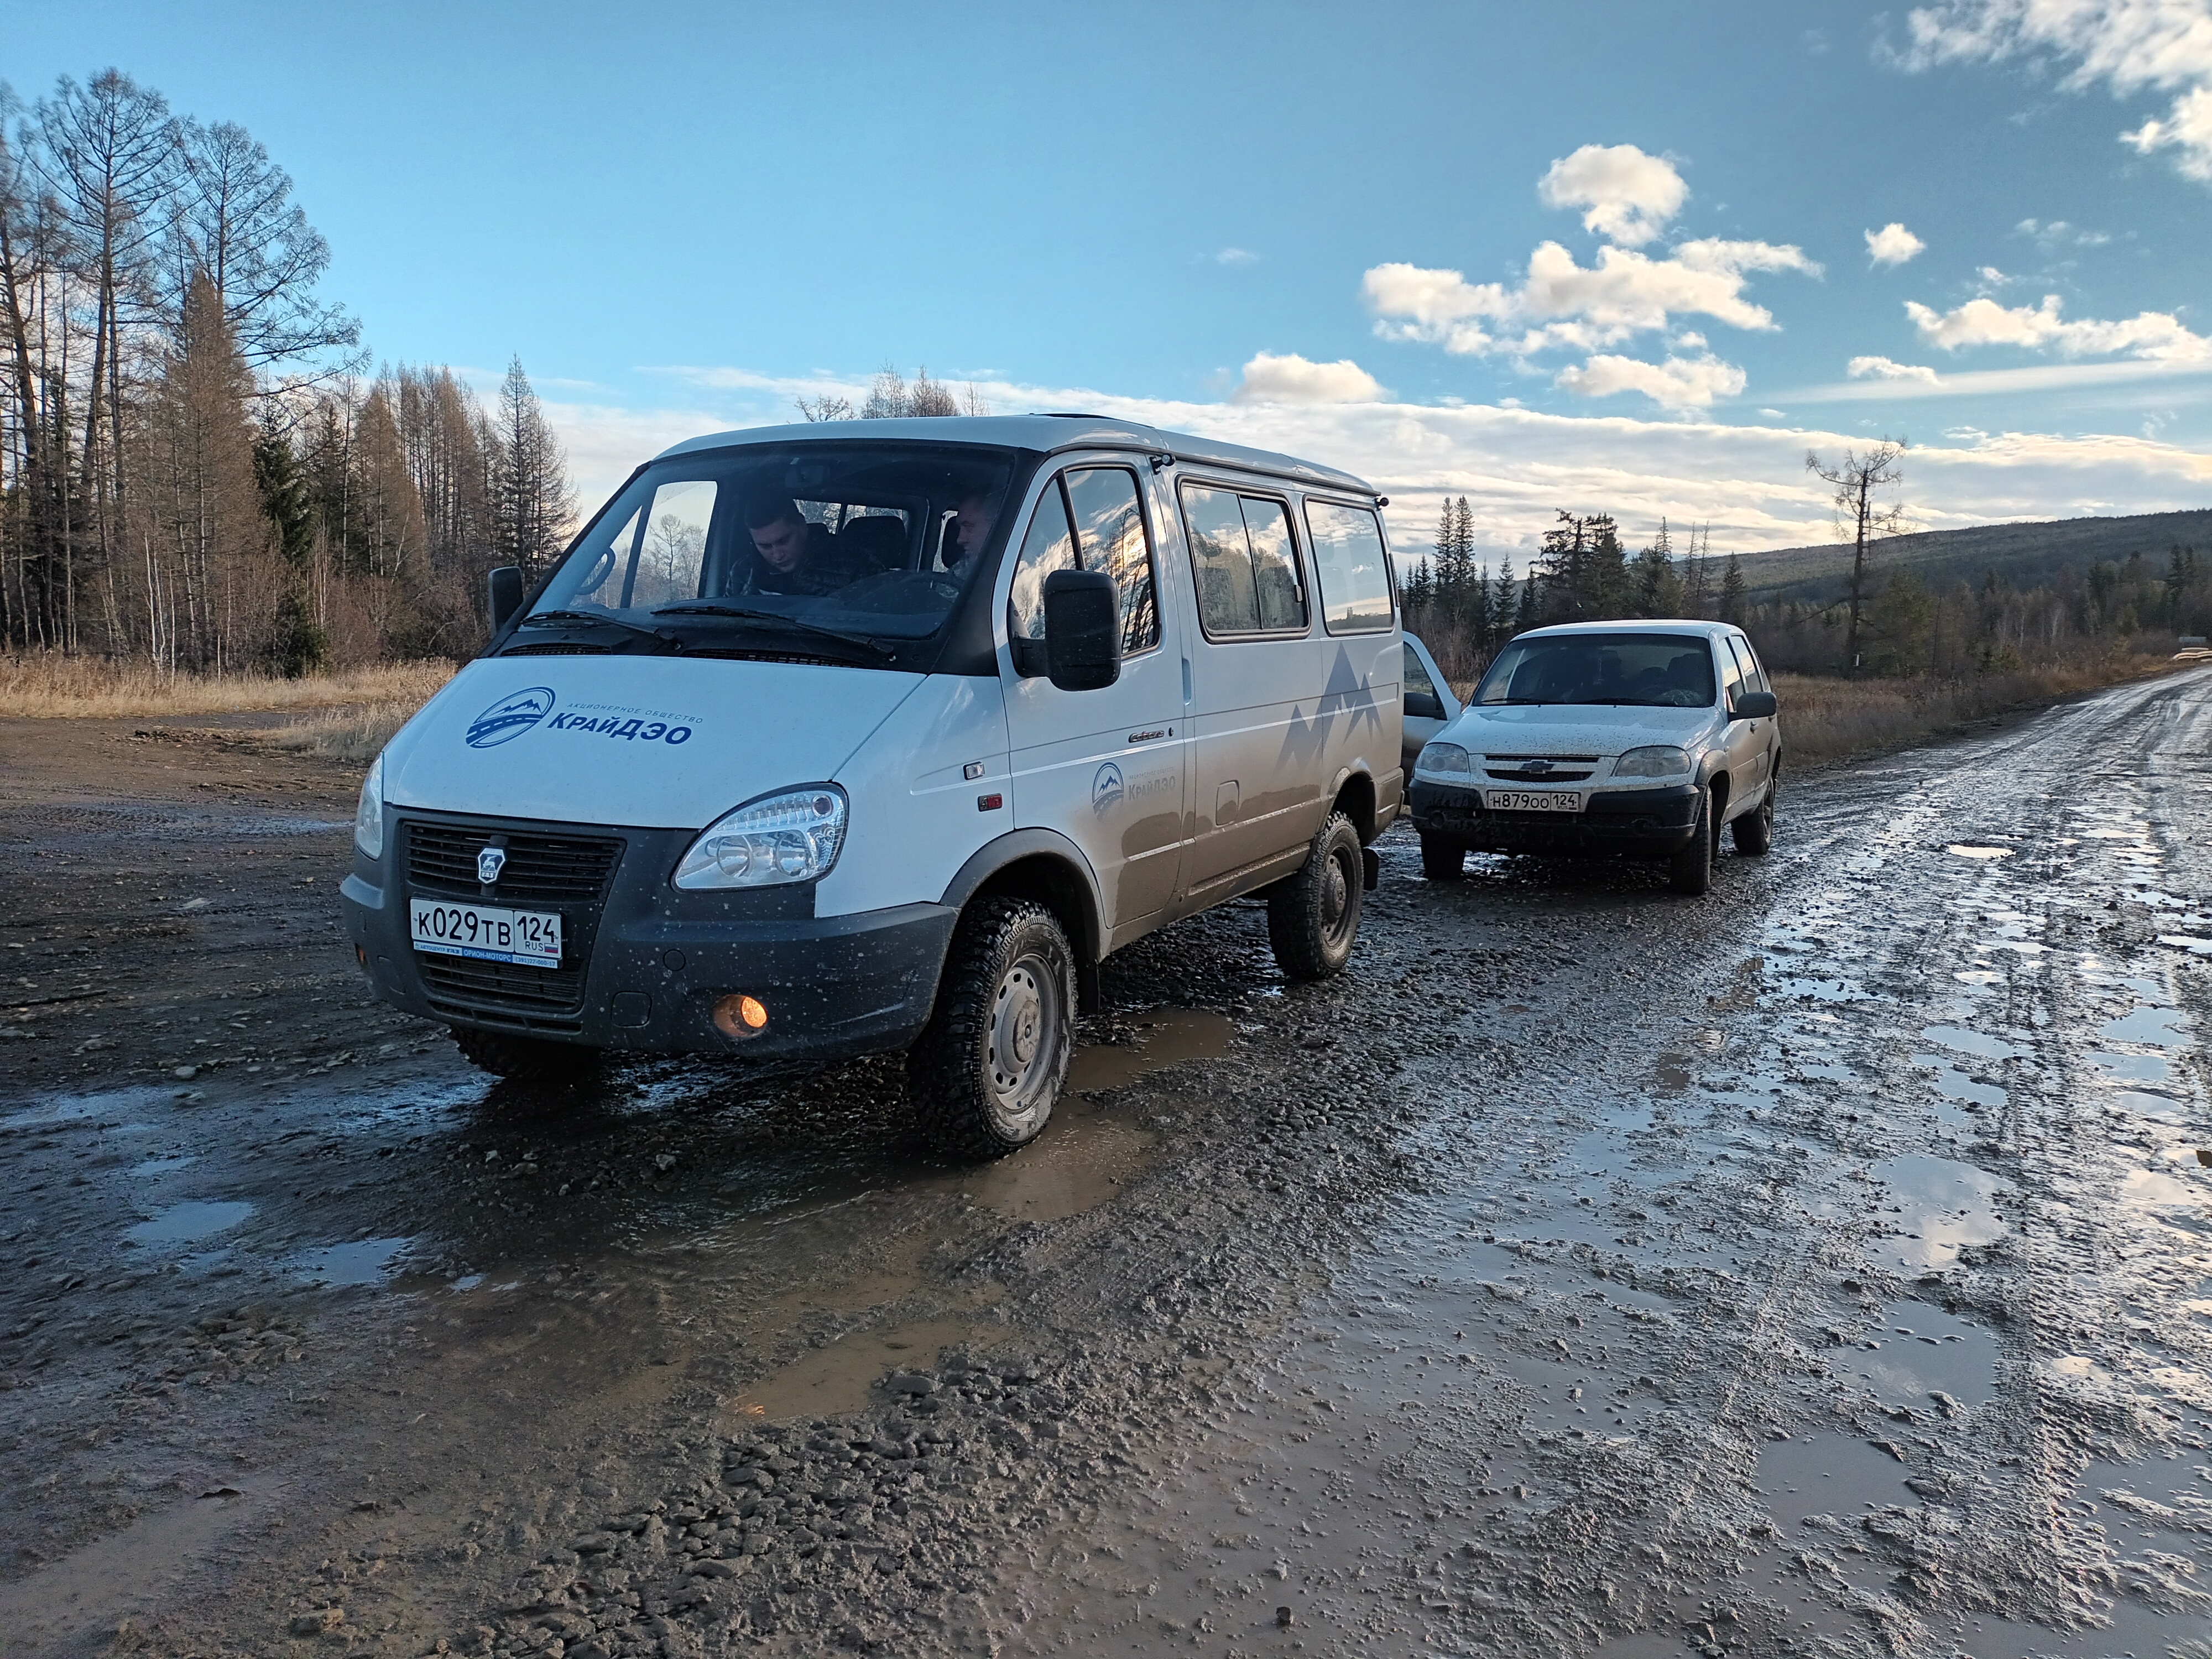 Межведомственная комиссия обследовала автодорогу Богучаны – Манзя.